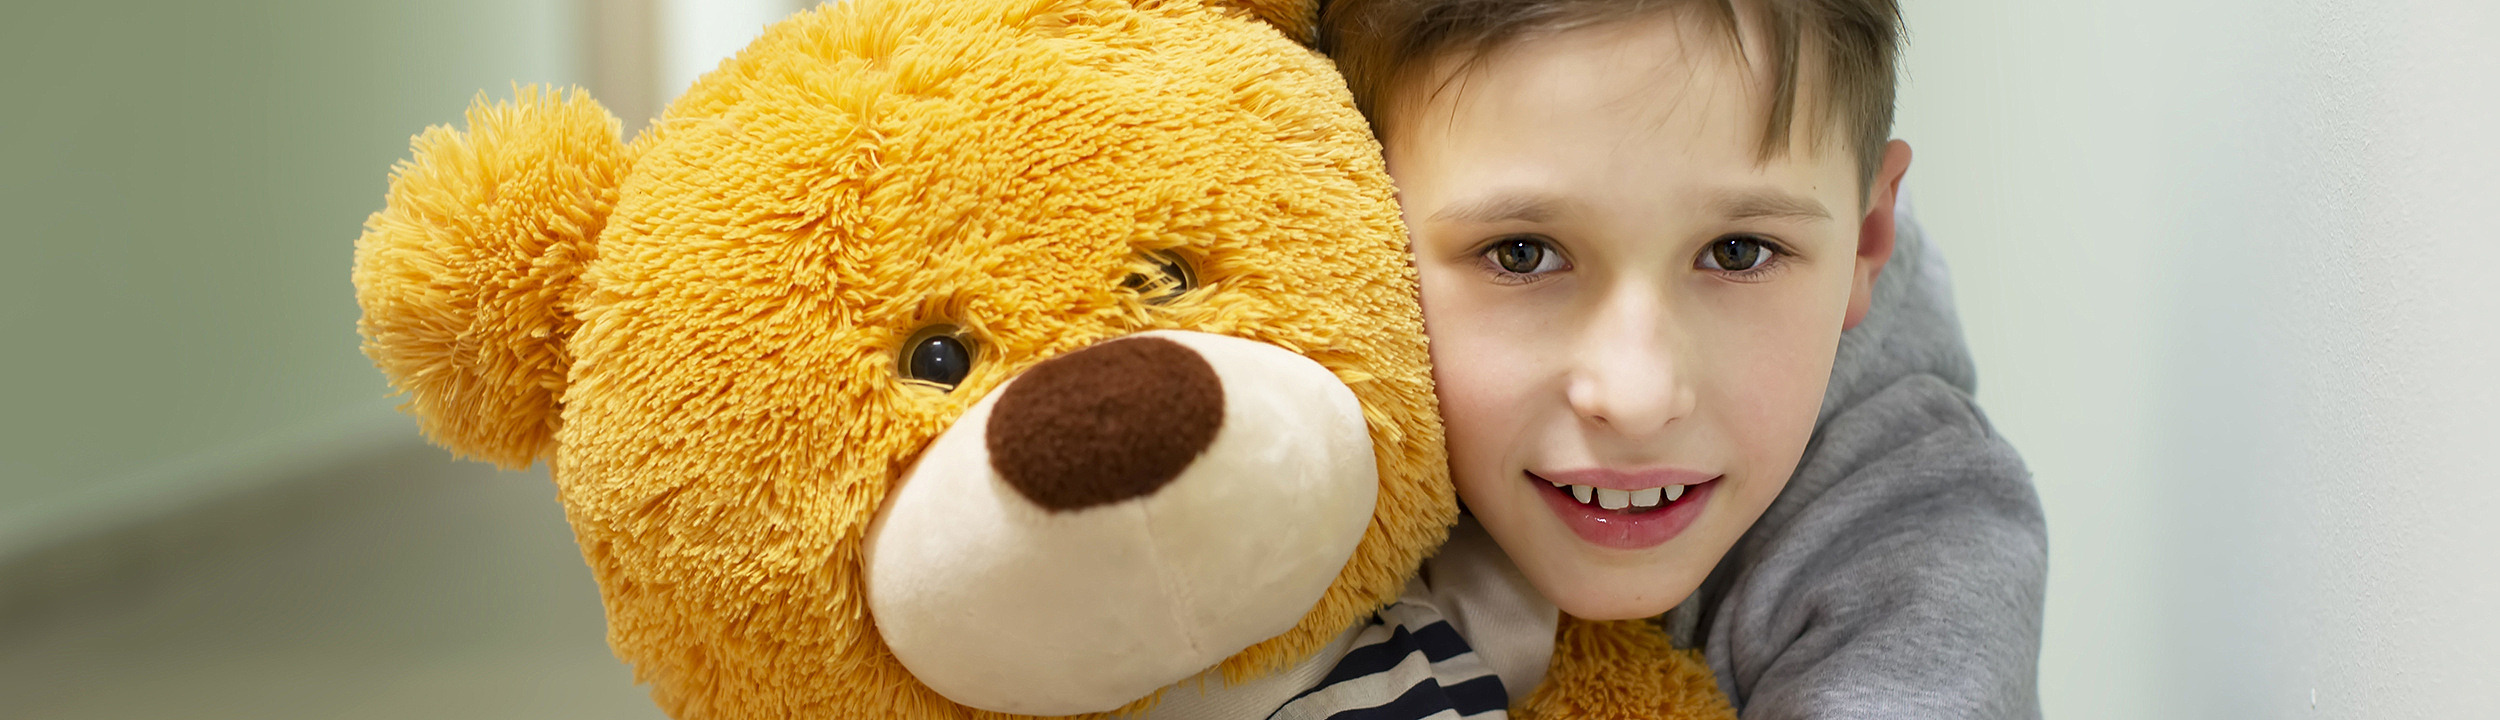 En pojke som kramar en gul nallebjörn